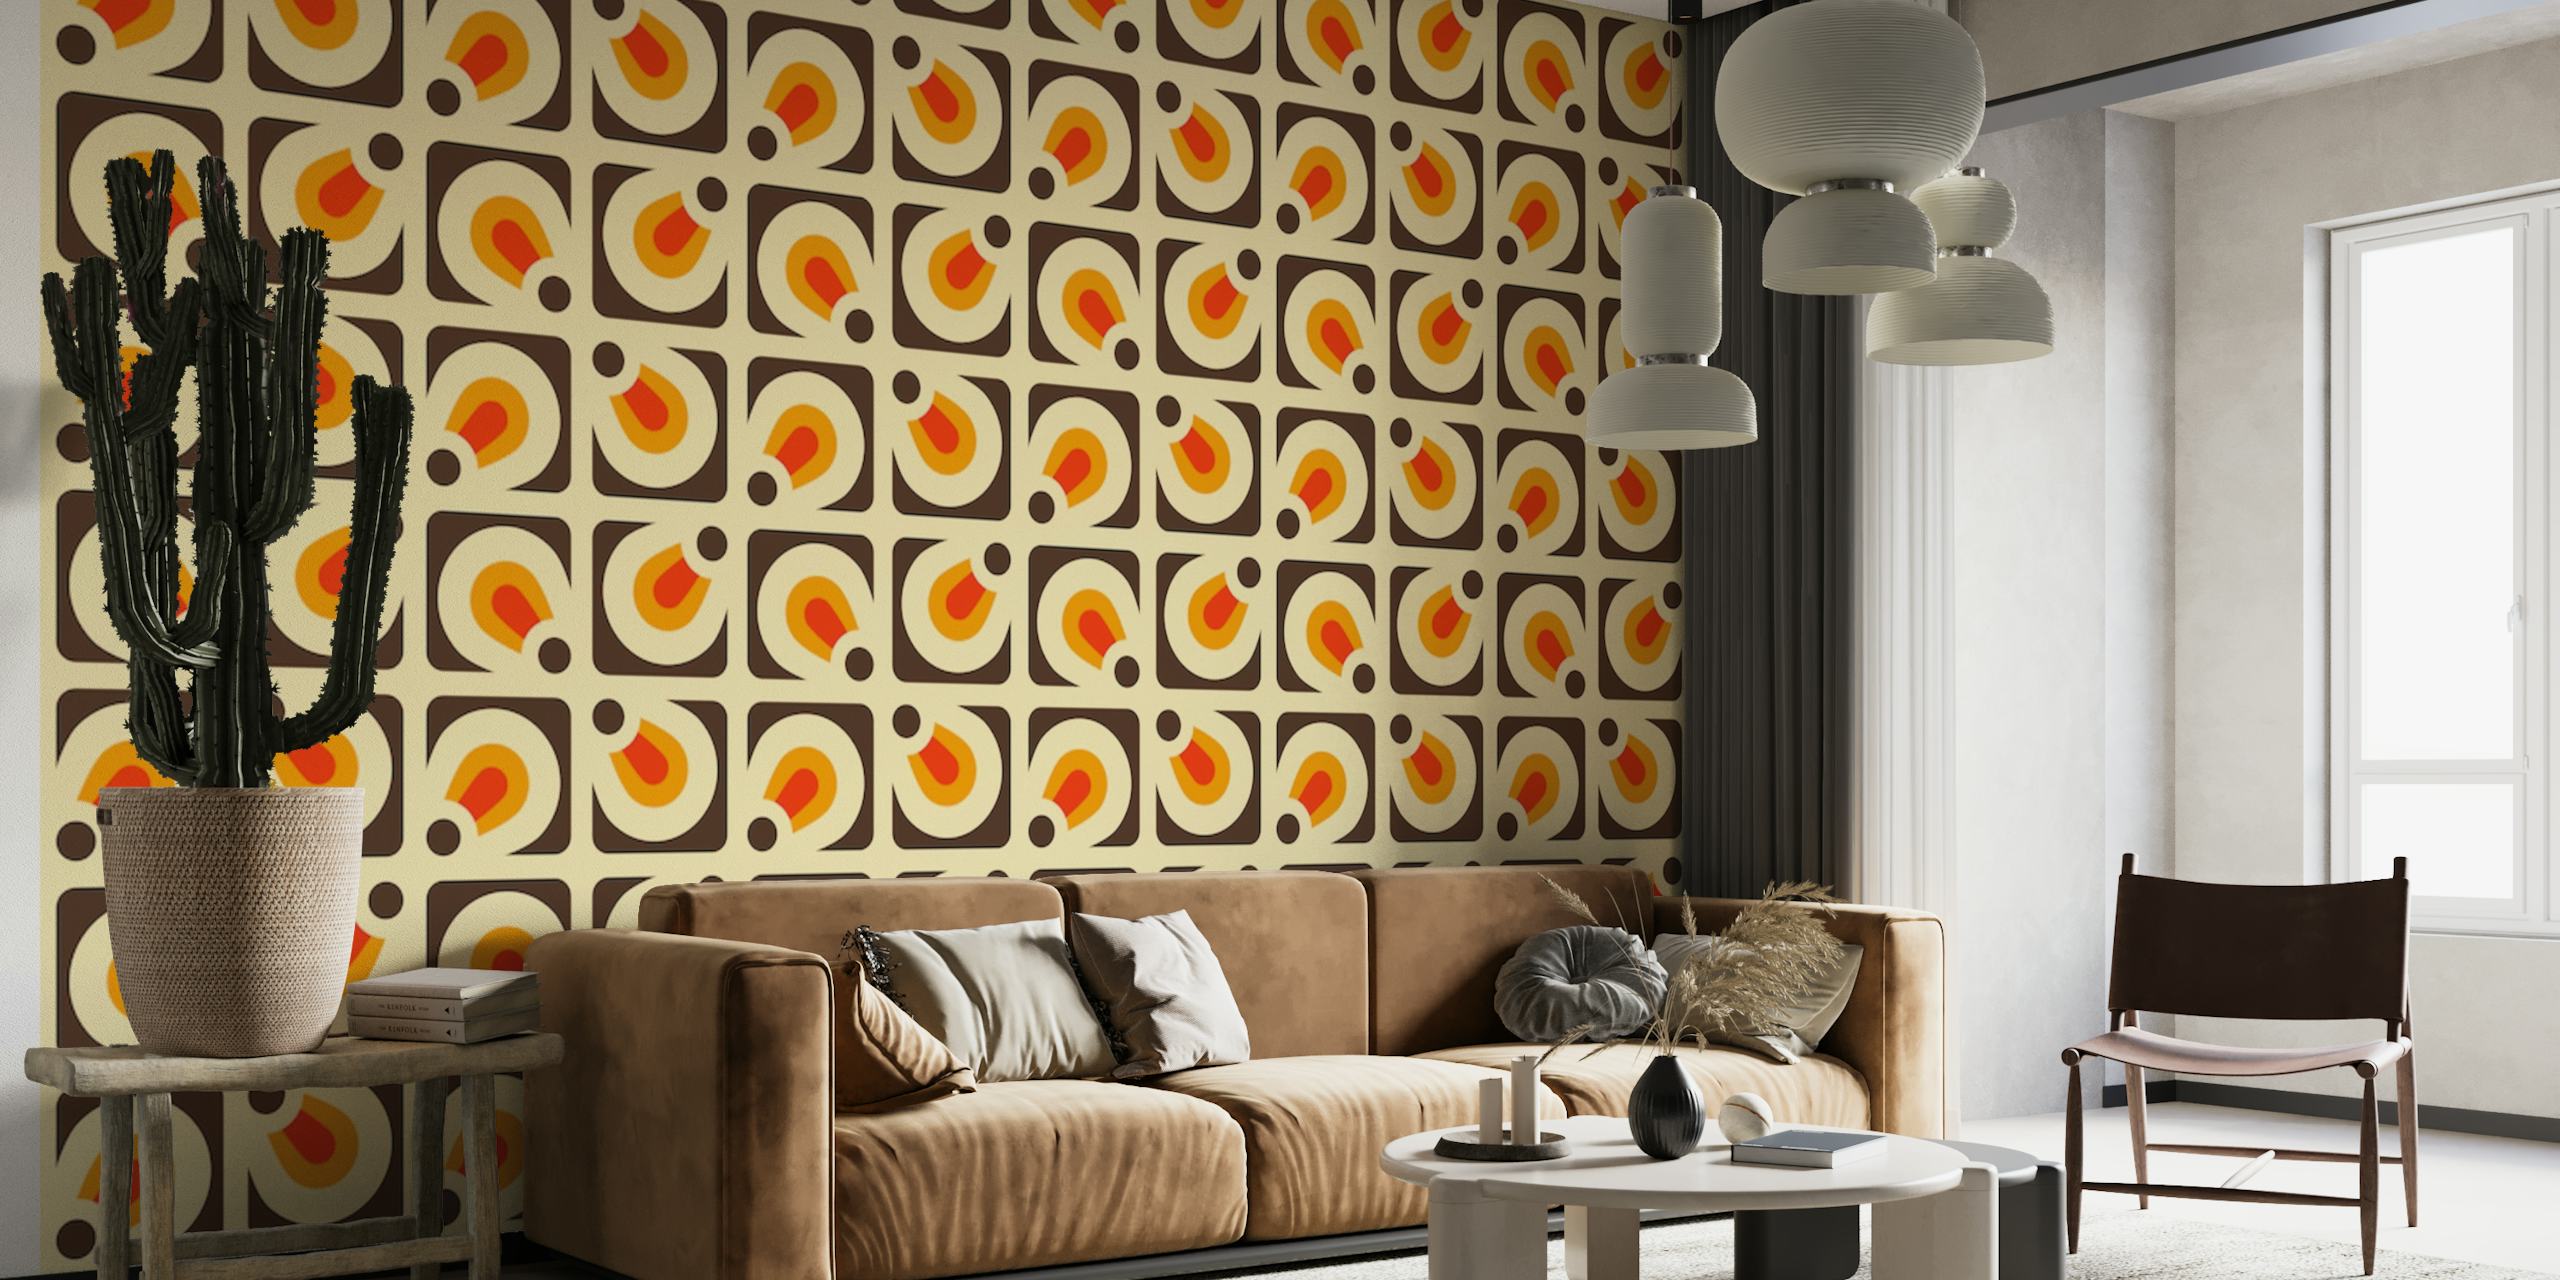 Papier peint mural « 2146 Retro Pattern » d'inspiration vintage avec des formes géométriques orange et blanches